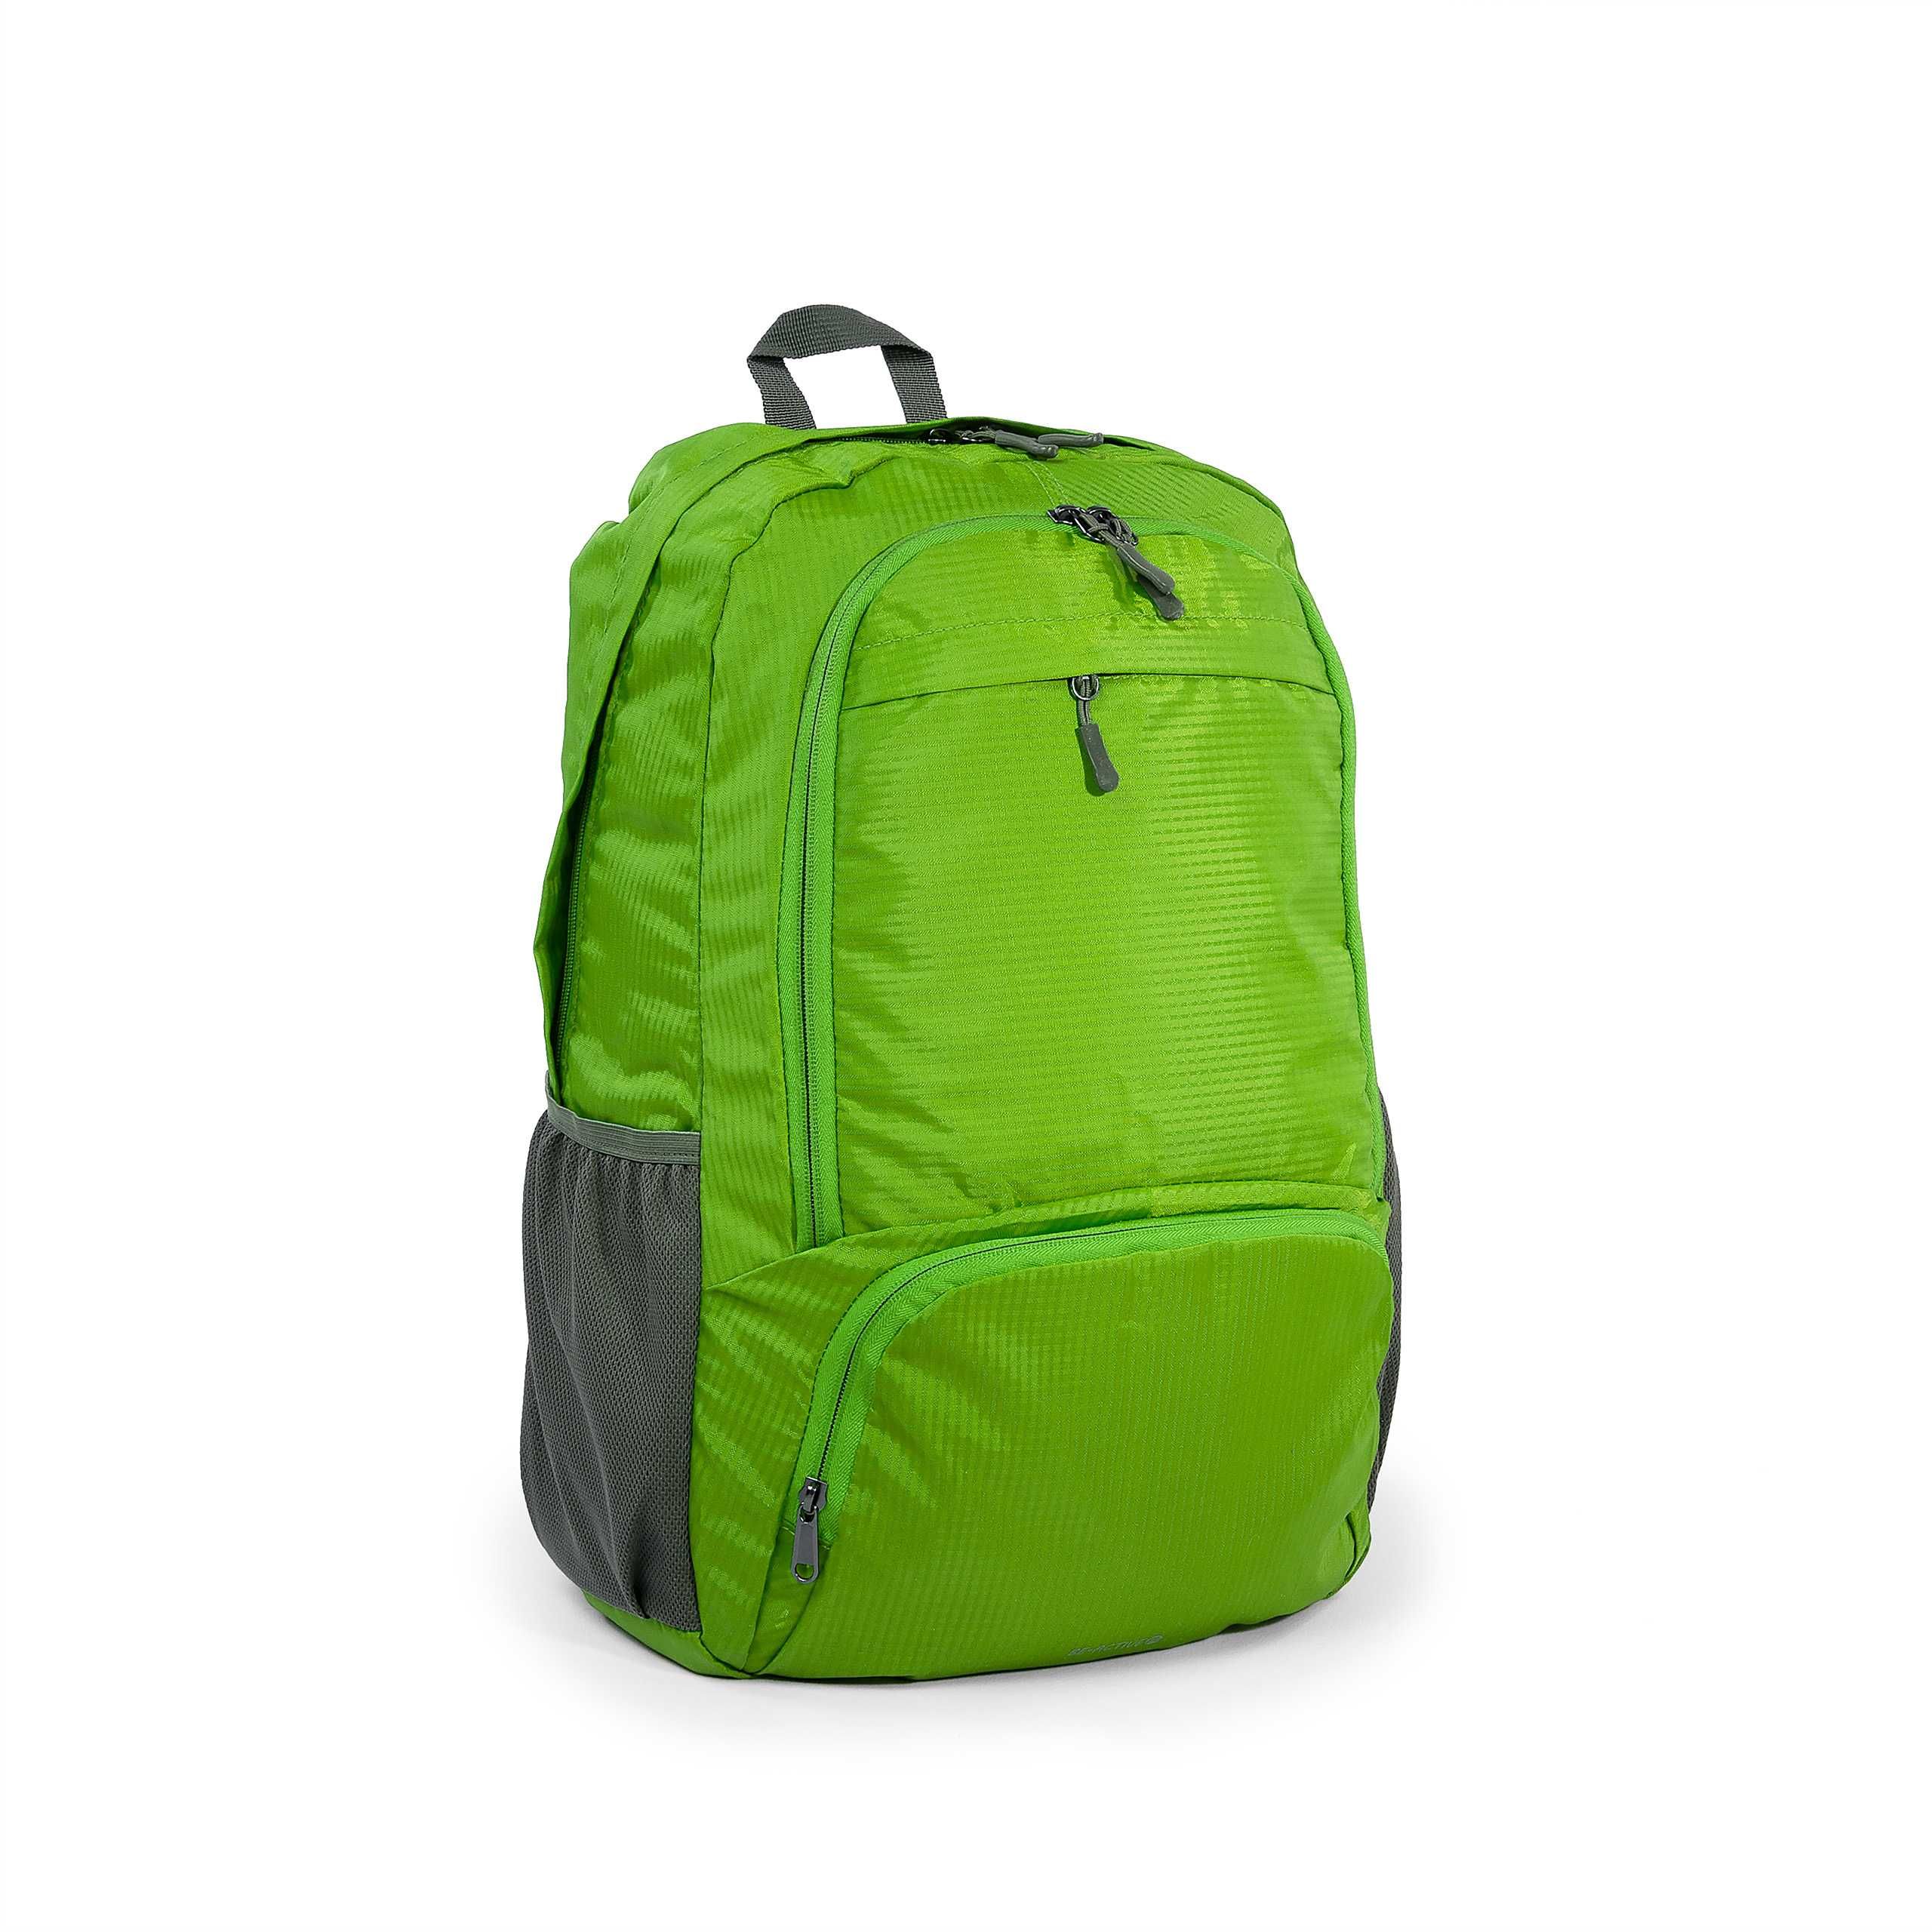 Plecak składany turystyczny na wycieczki podróże zielony PM4